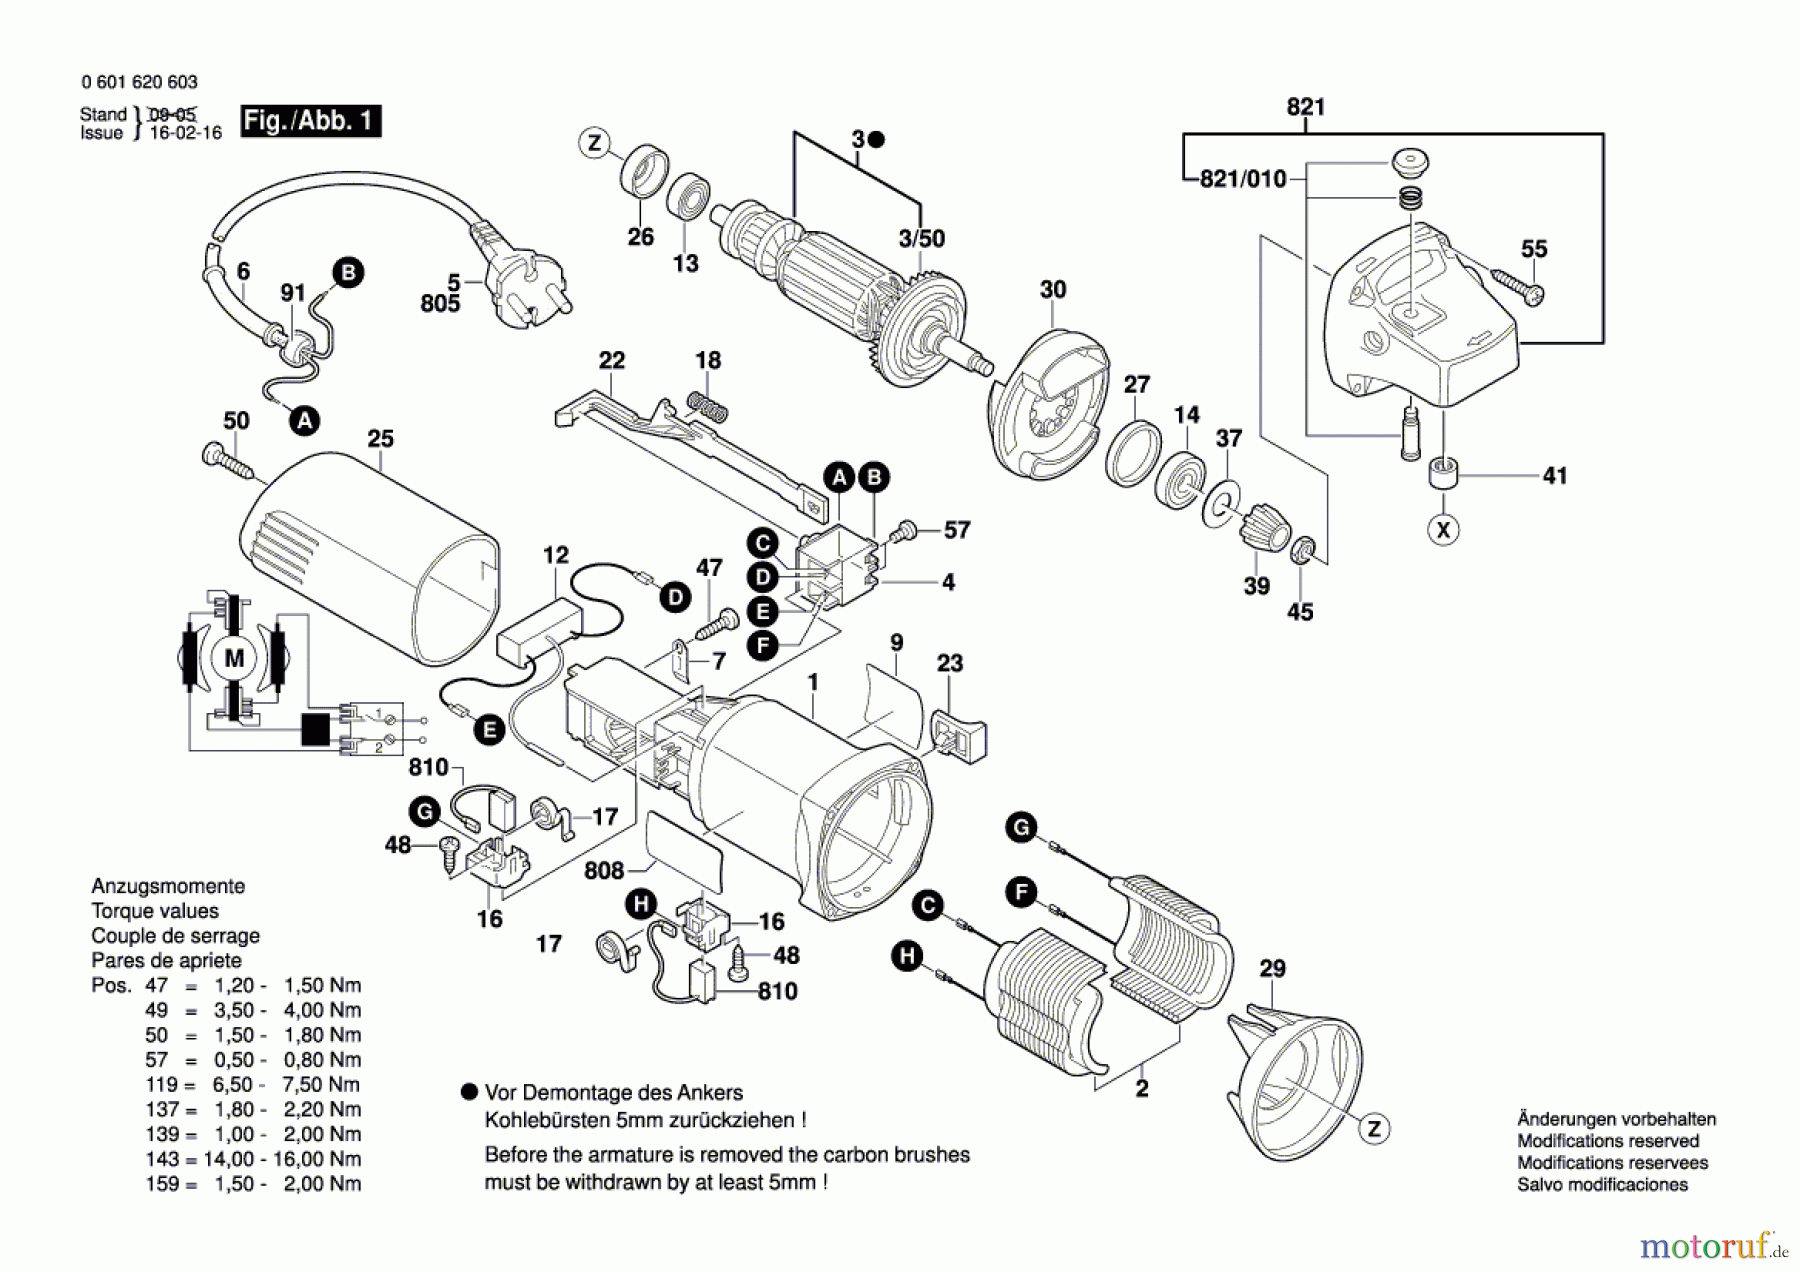  Bosch Werkzeug Flachdübelfräse GFF 22 A Seite 1